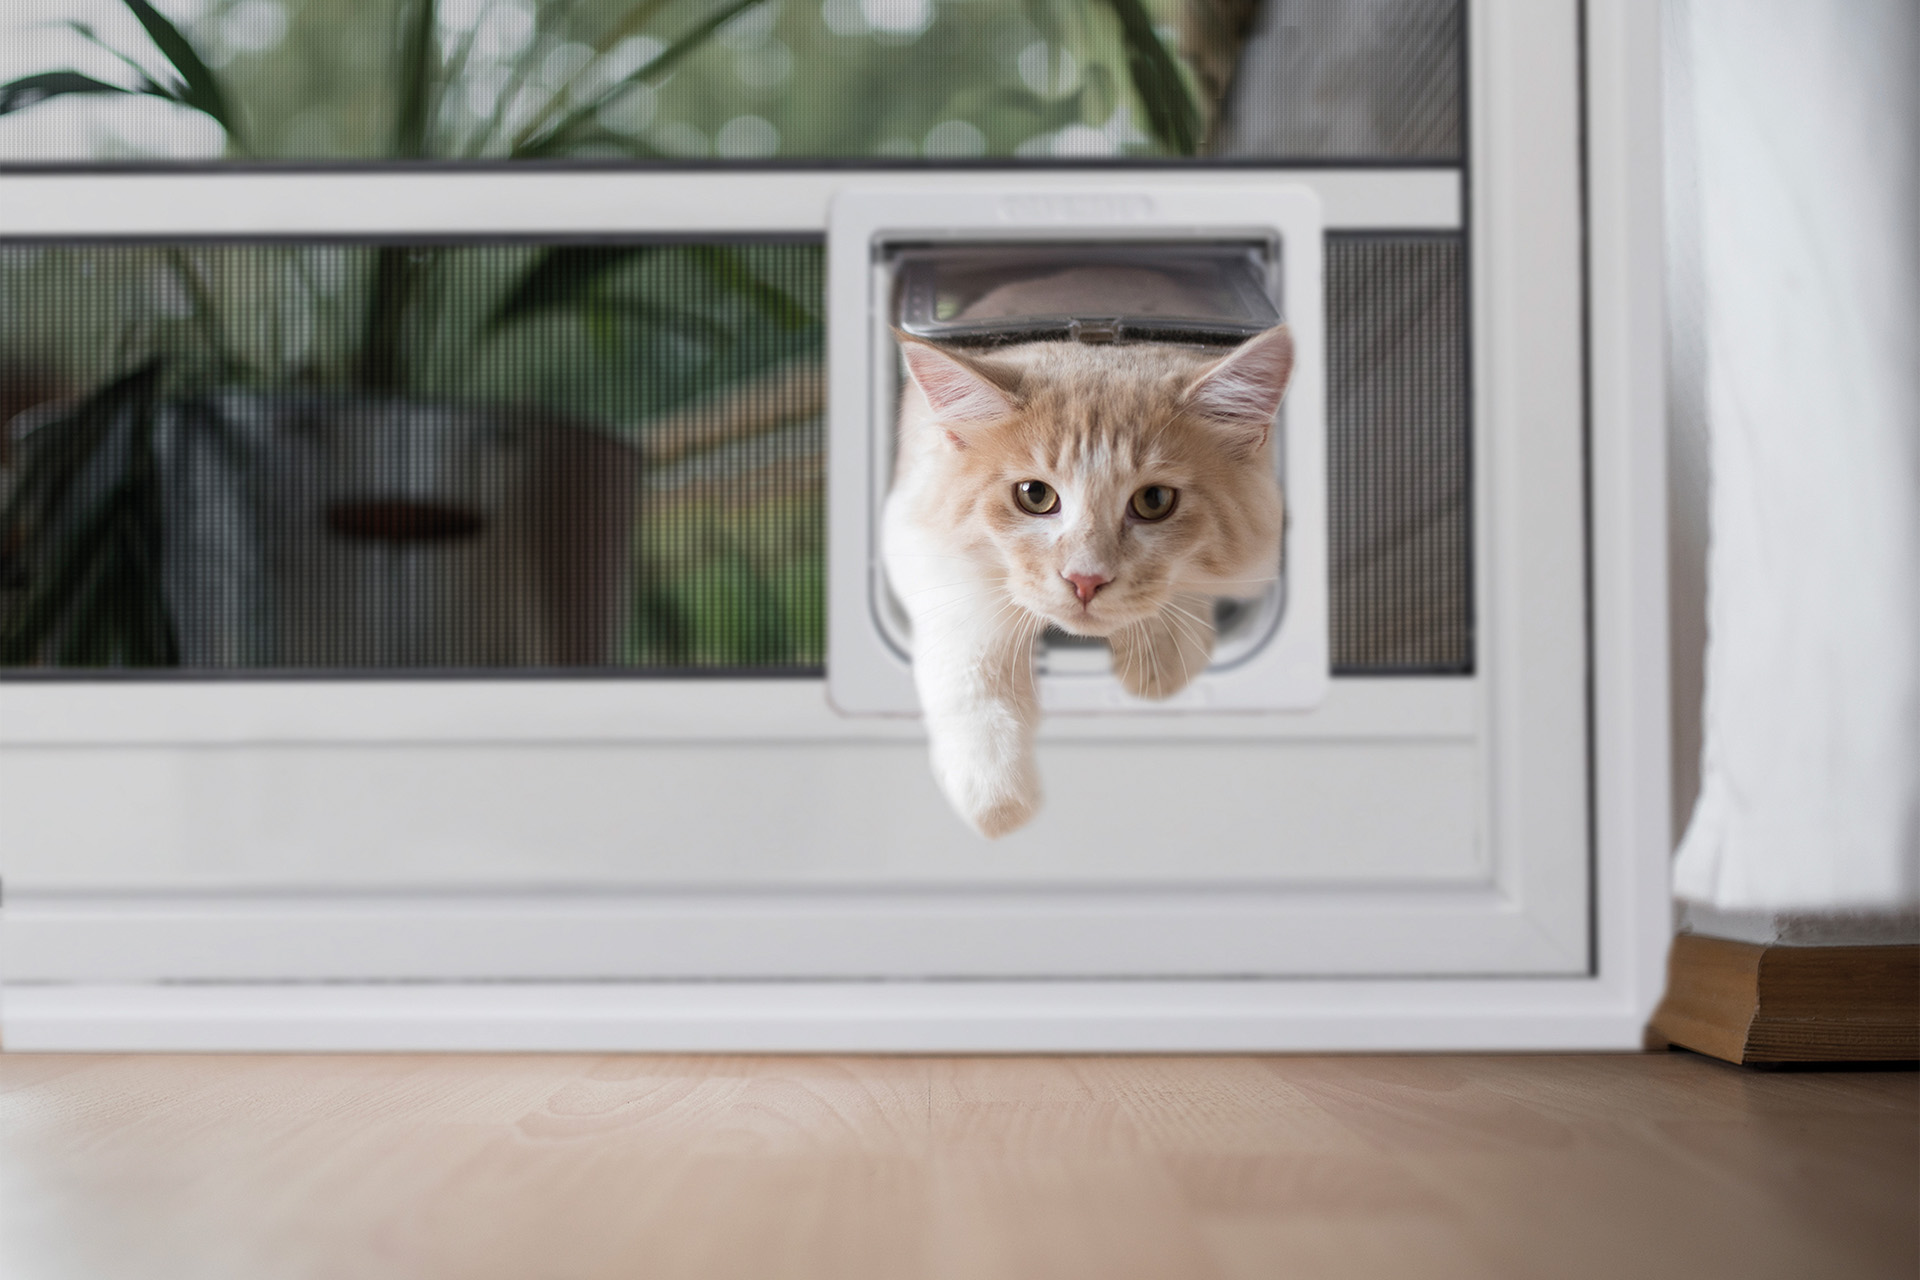 Insektenschutztür mit einer Katzenklappe: So können Katzen die Insektenschutztür passieren, ohne die Gase zu beschädigen